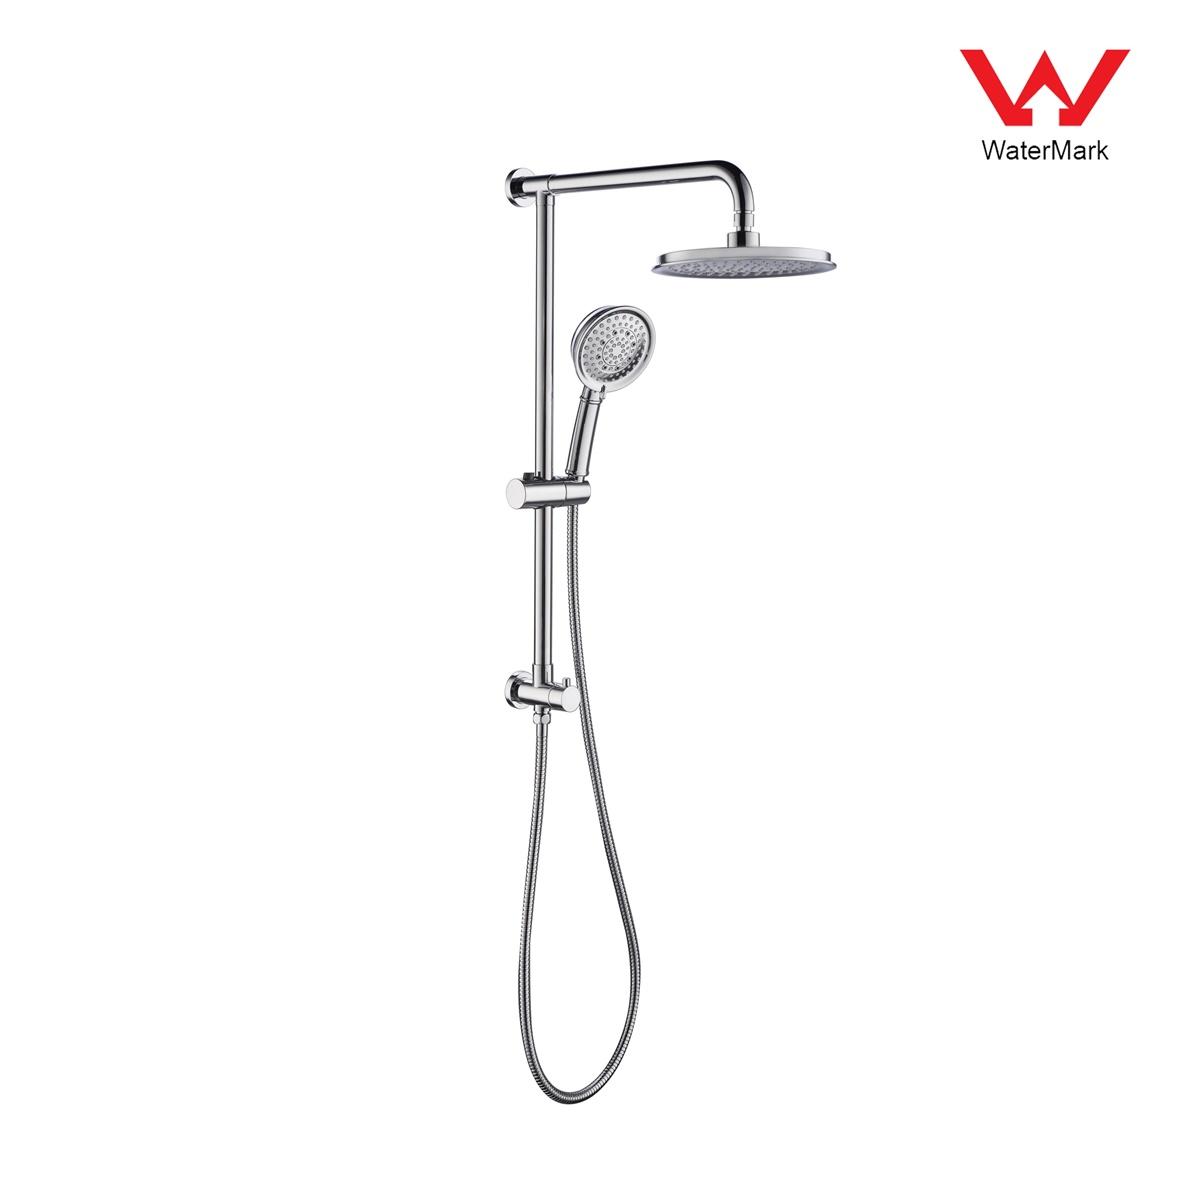 DA610020CP Truse de duș certificate Watermark, set de duș cu efect de ploaie, set de duș glisant;